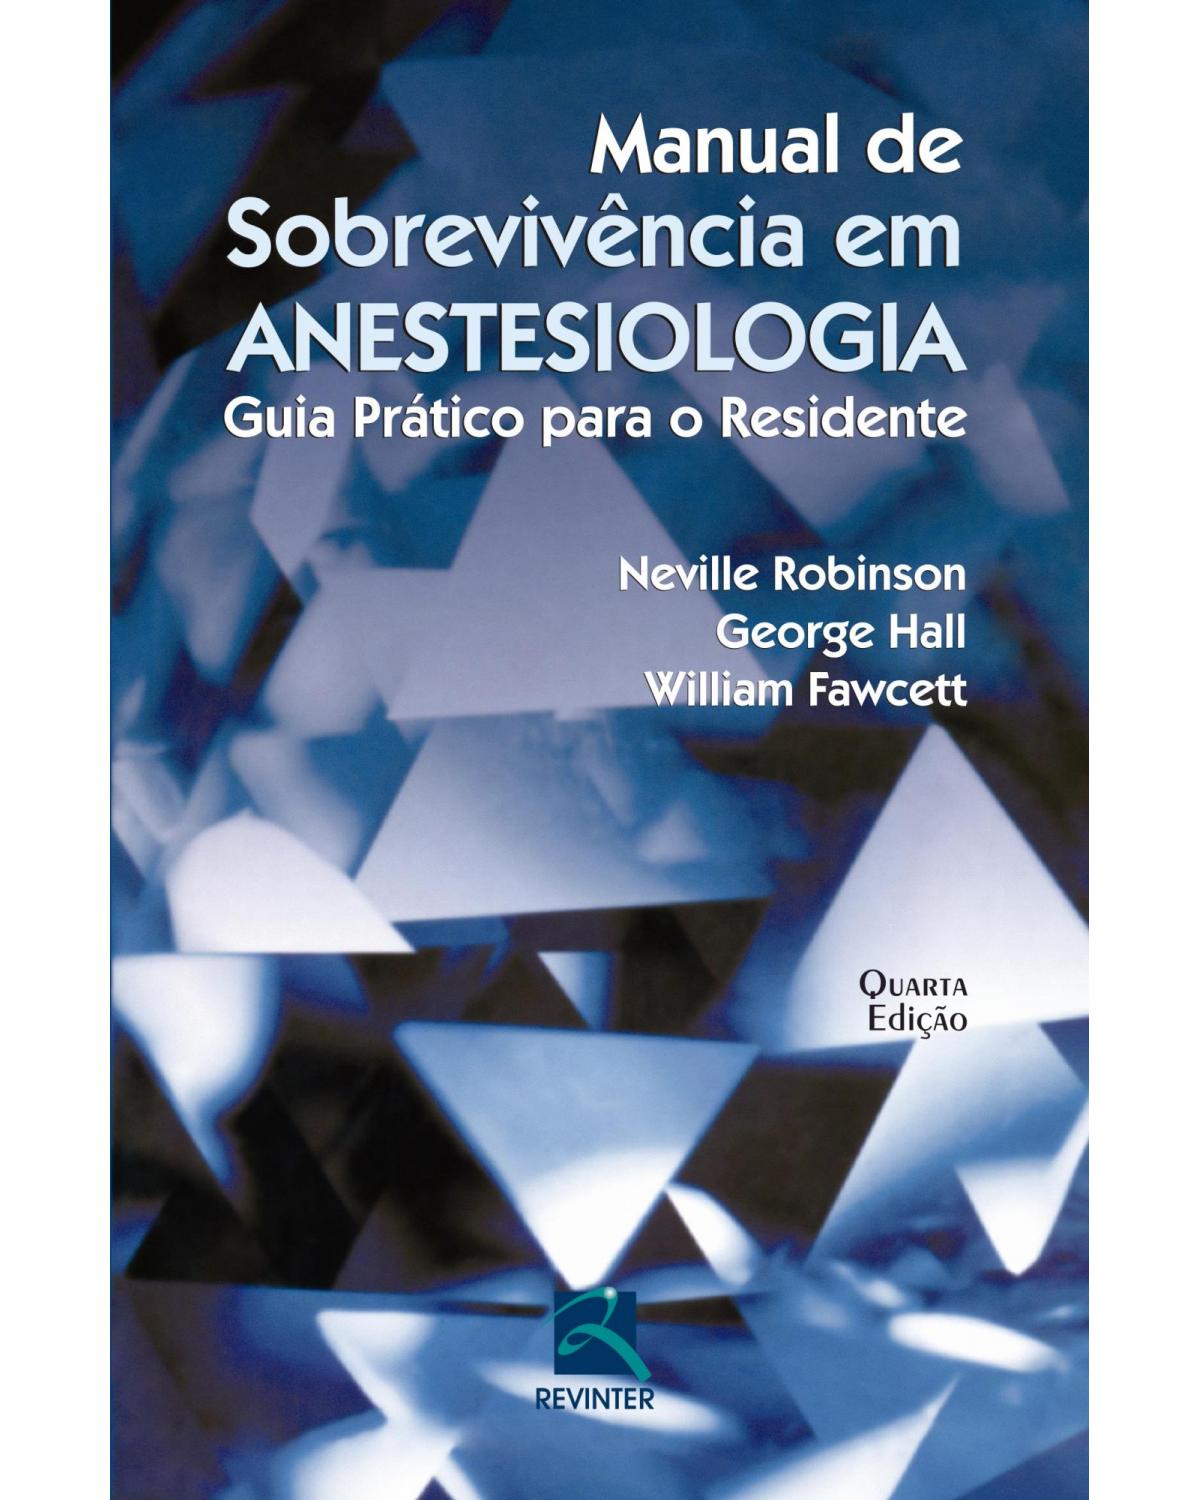 Manual de sobrevivência em anestesiologia - guia prático para o residente - 4ª Edição | 2014